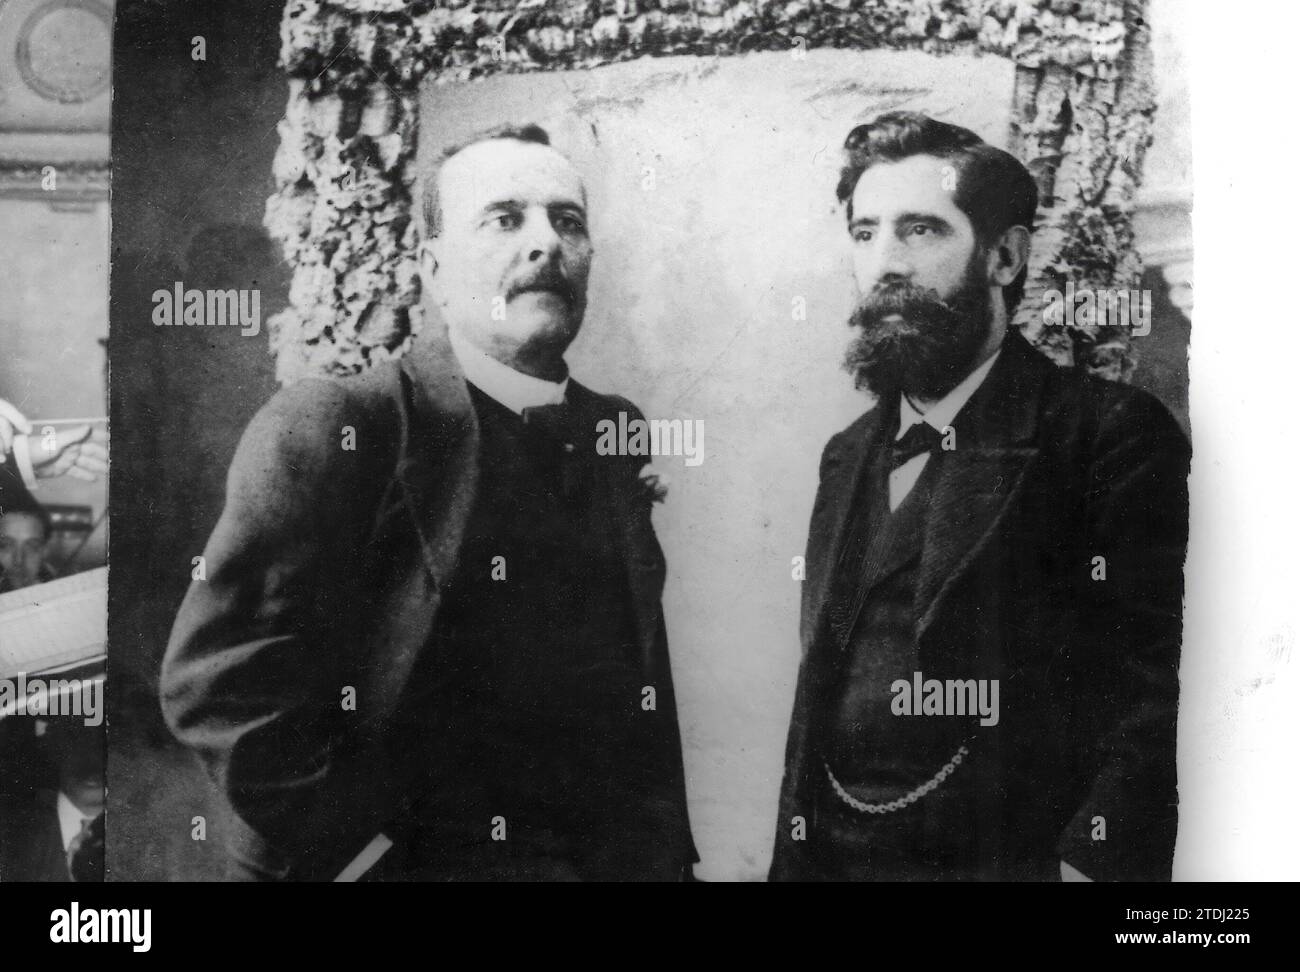 09/30/1890. Il signor Ricardo de la Vega con il suo collaboratore, Tomas Bretón. Crediti: Album / Archivo ABC Foto Stock